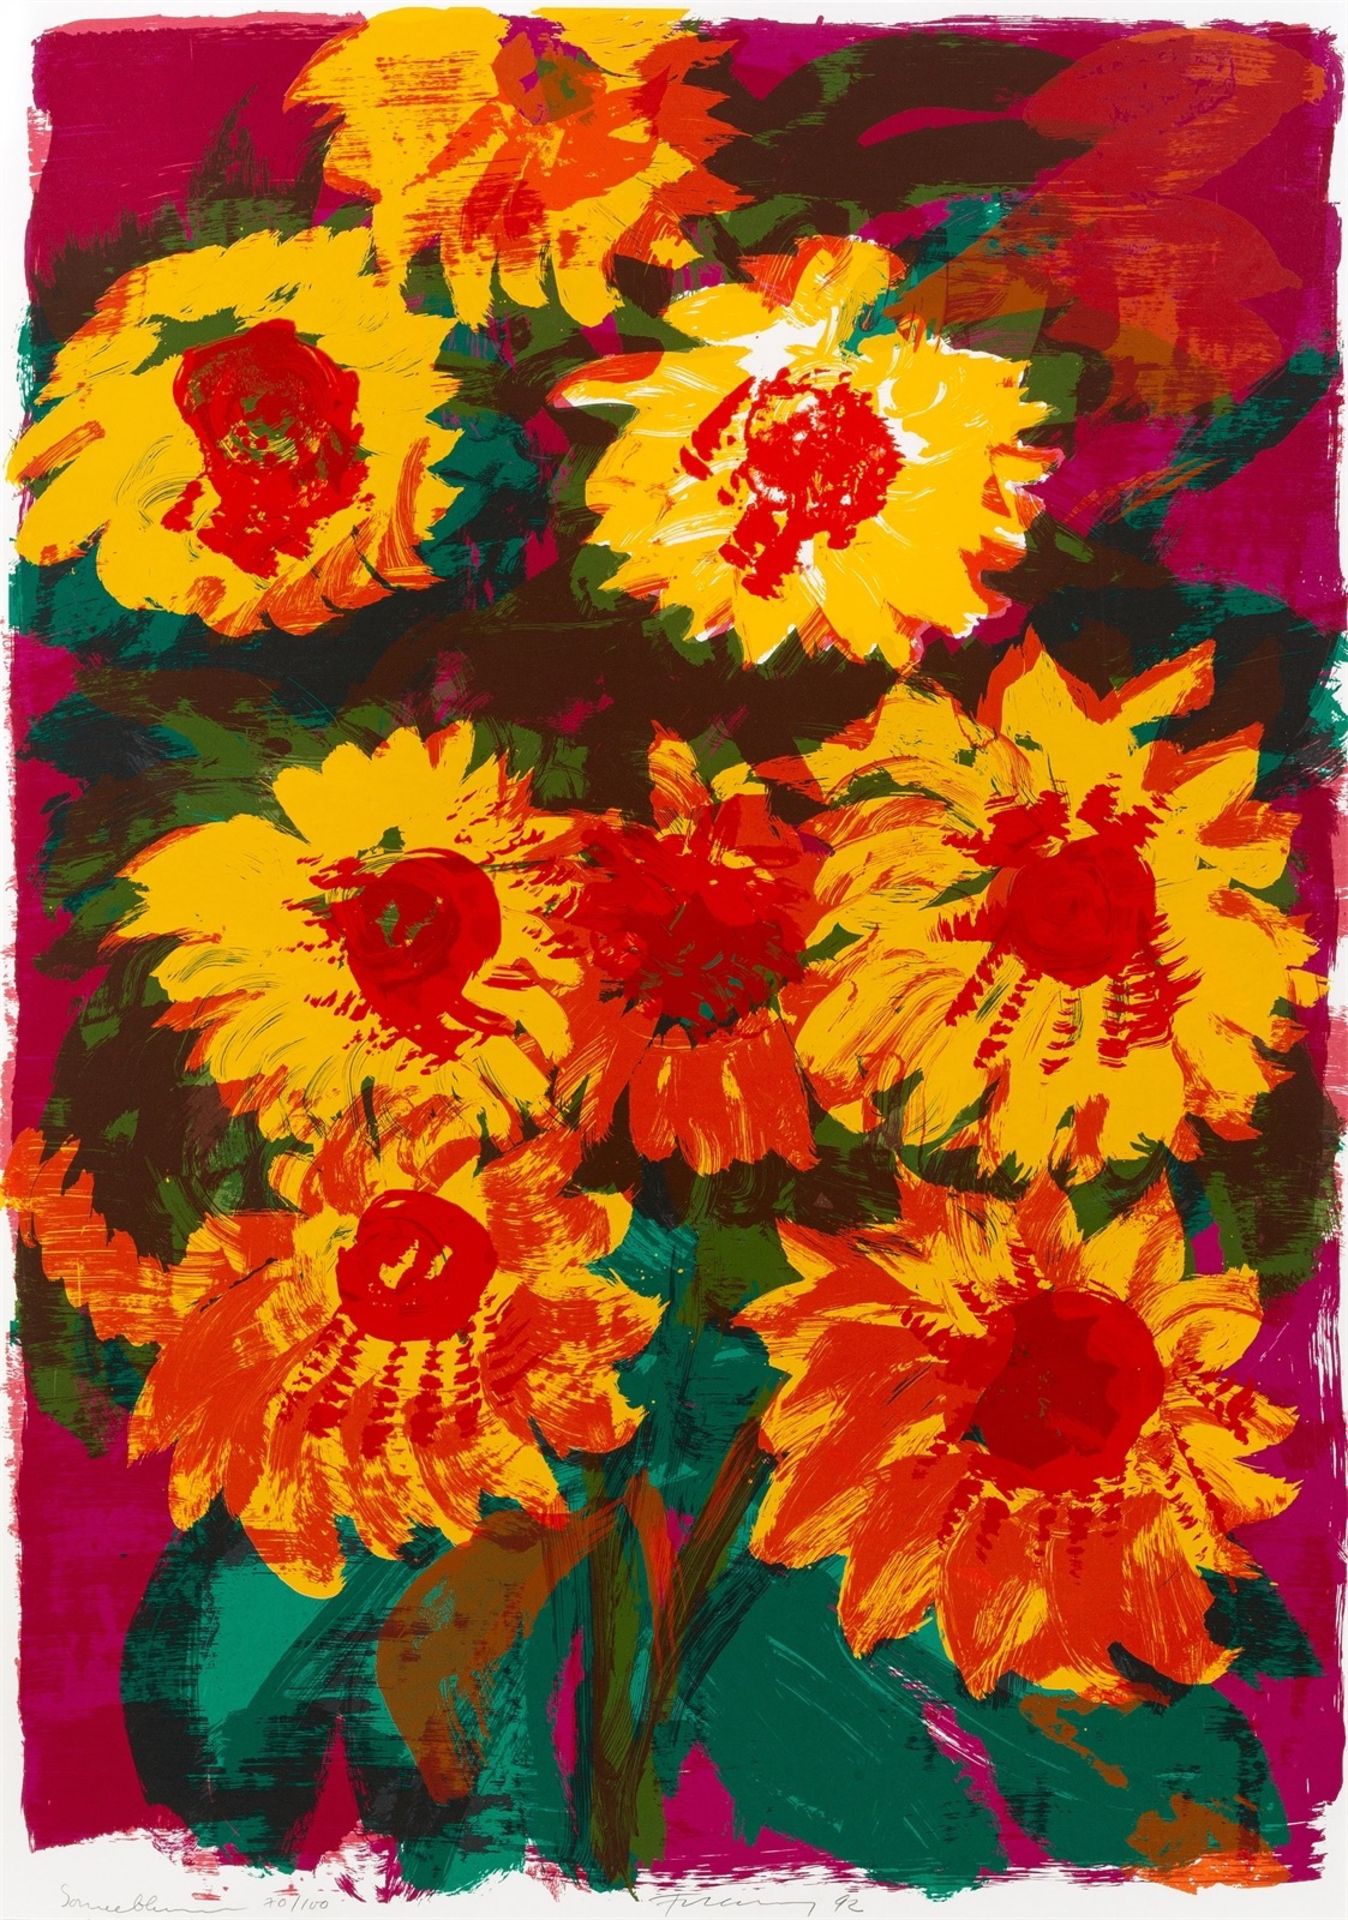 Rainer Fetting. ”Sonnenblumen”. 1992